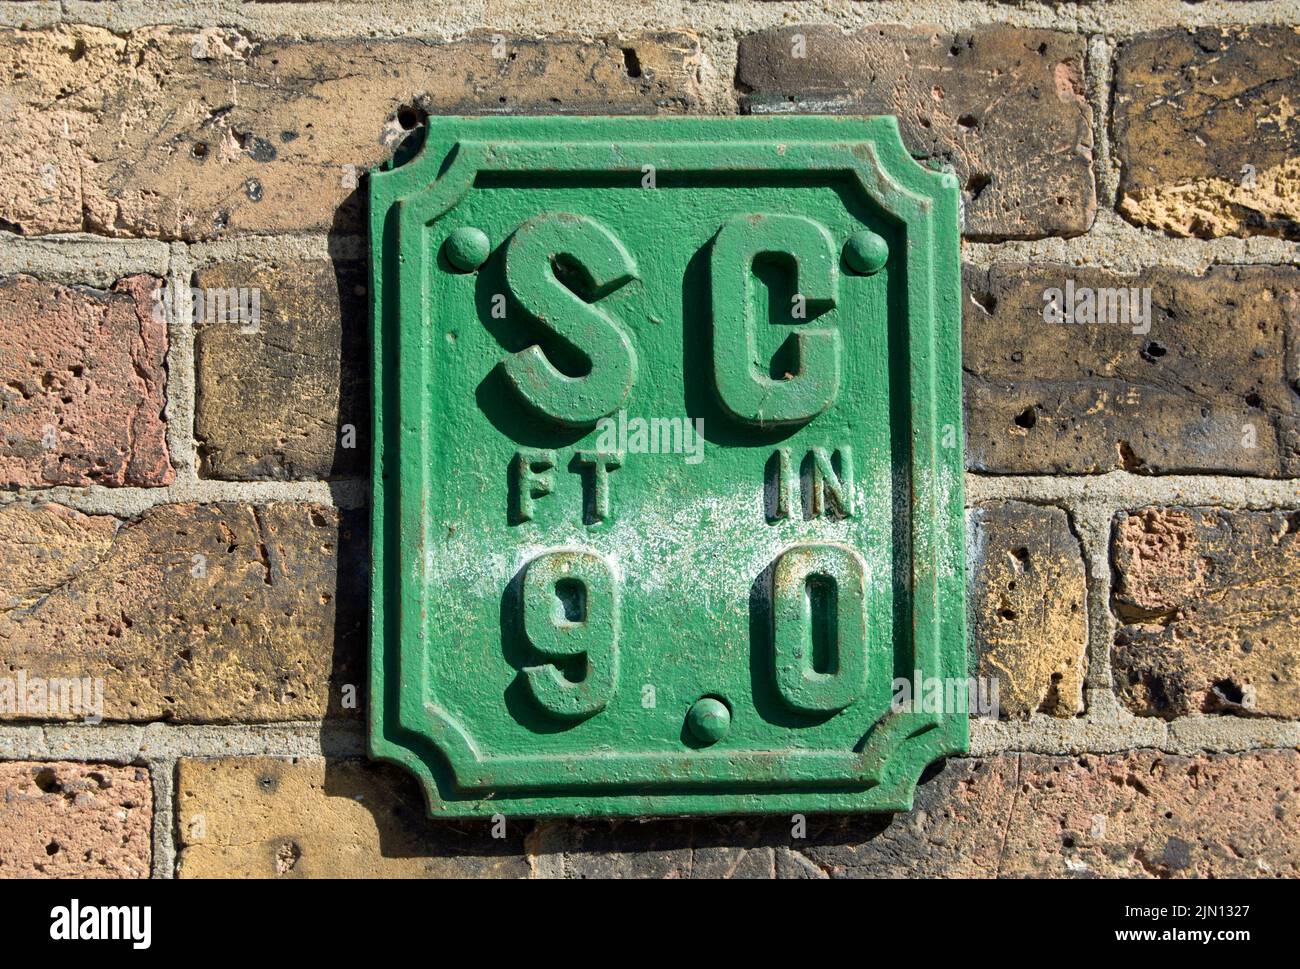 cartello da parete inglese che indica la posizione di un rubinetto, per il controllo dell'acqua di rete, a una distanza di 9 piedi, a brentford, londra, inghilterra Foto Stock